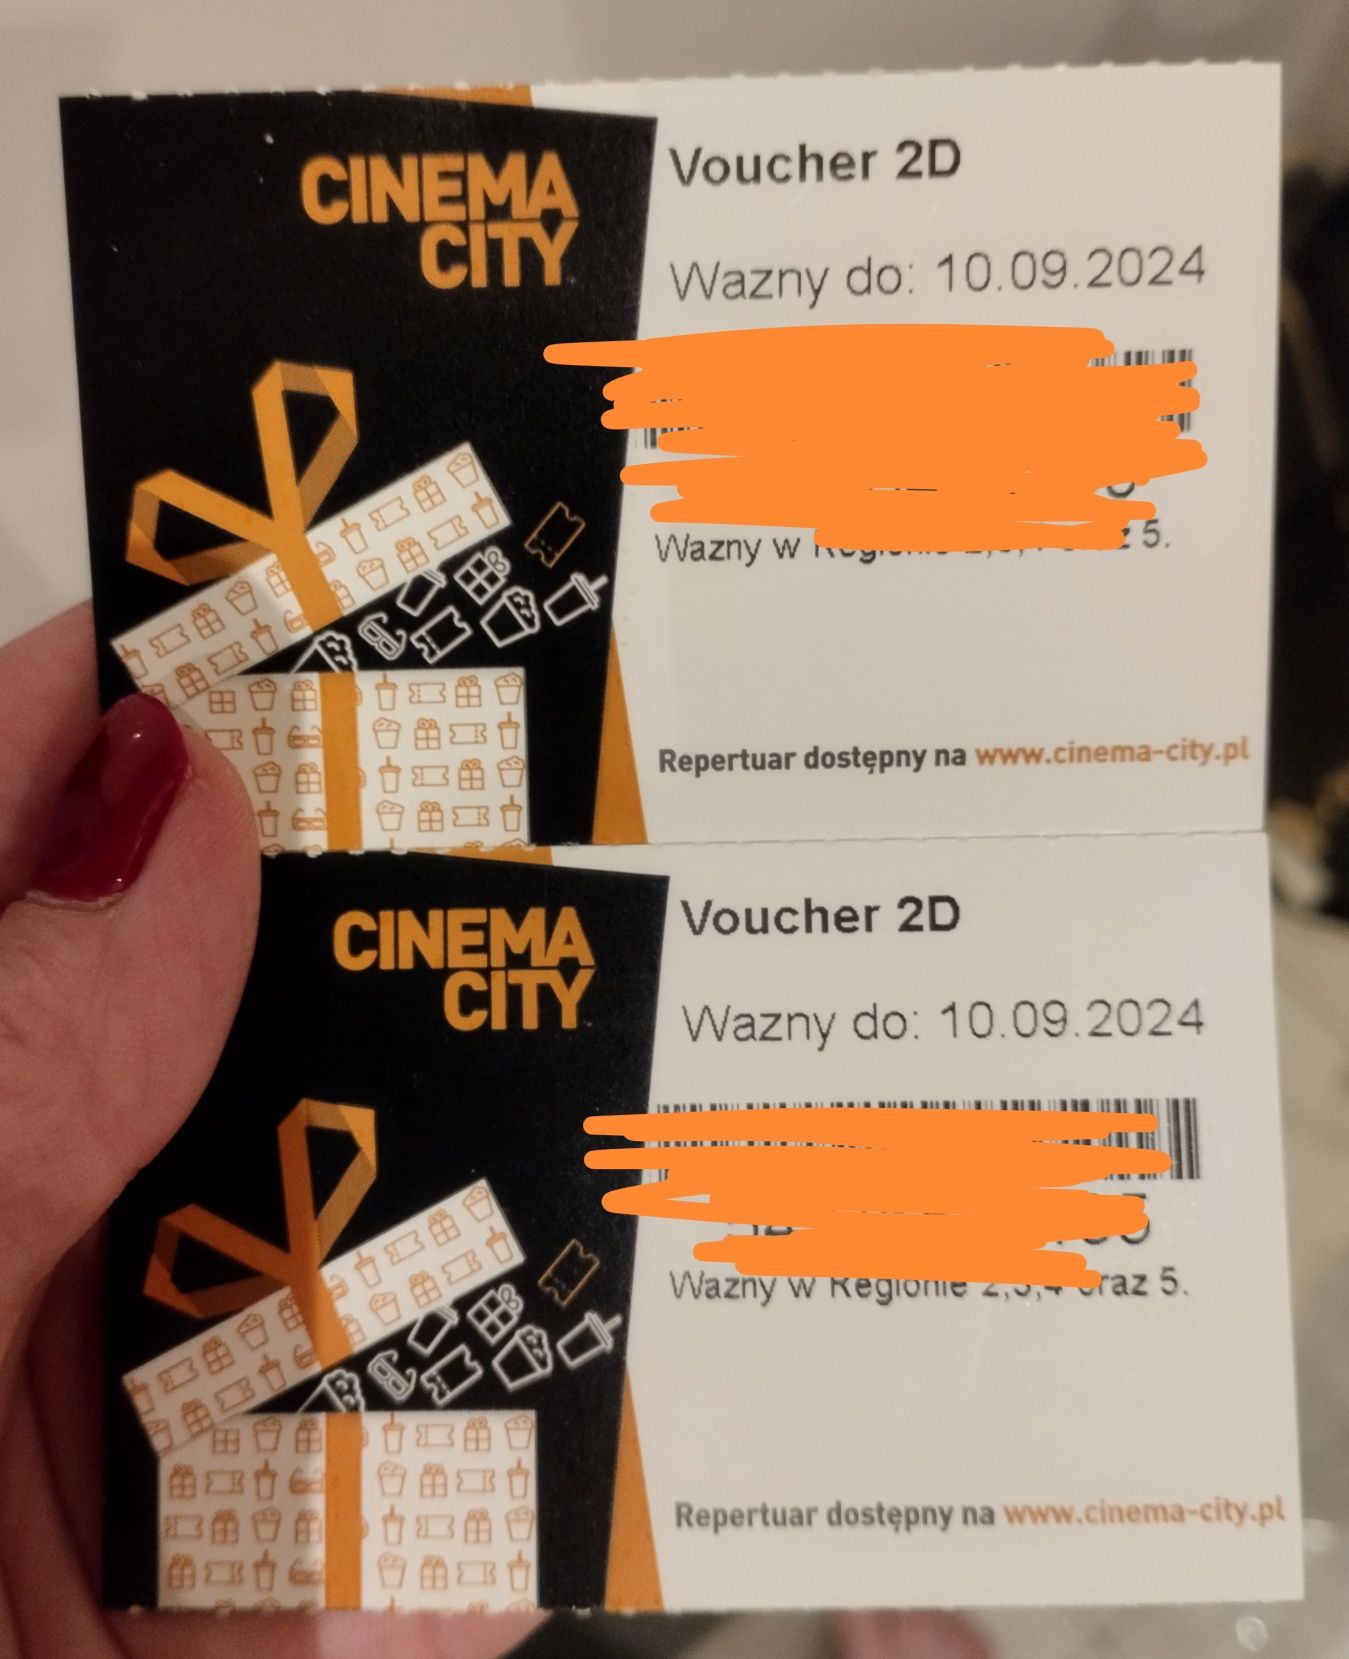 Voucher bilet do kina Cinema City na dowolny seans 2D wszystkie dni